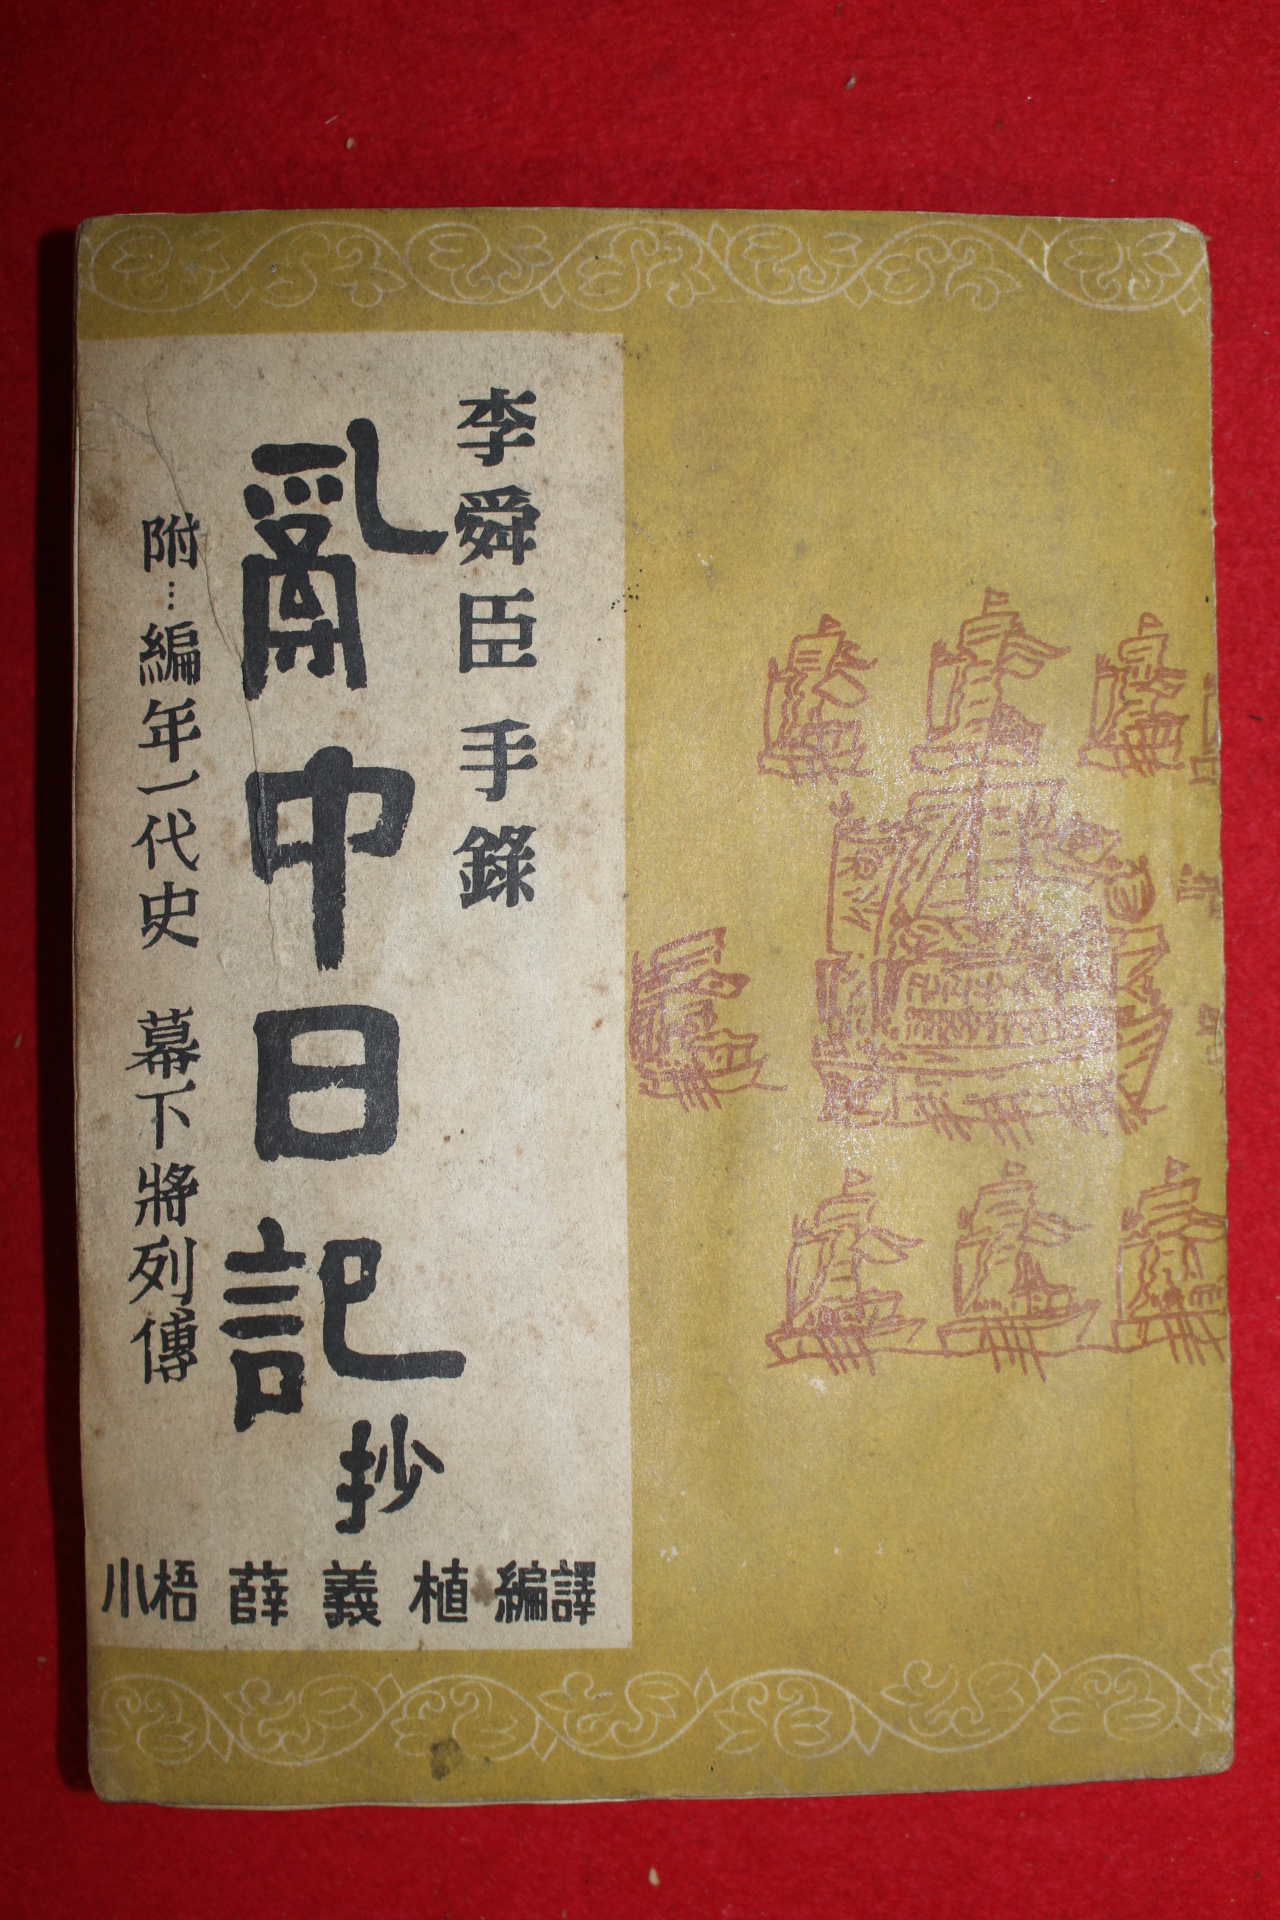 1955년 설의식(薛義植) 이순신수록 난중일기(亂中日記)